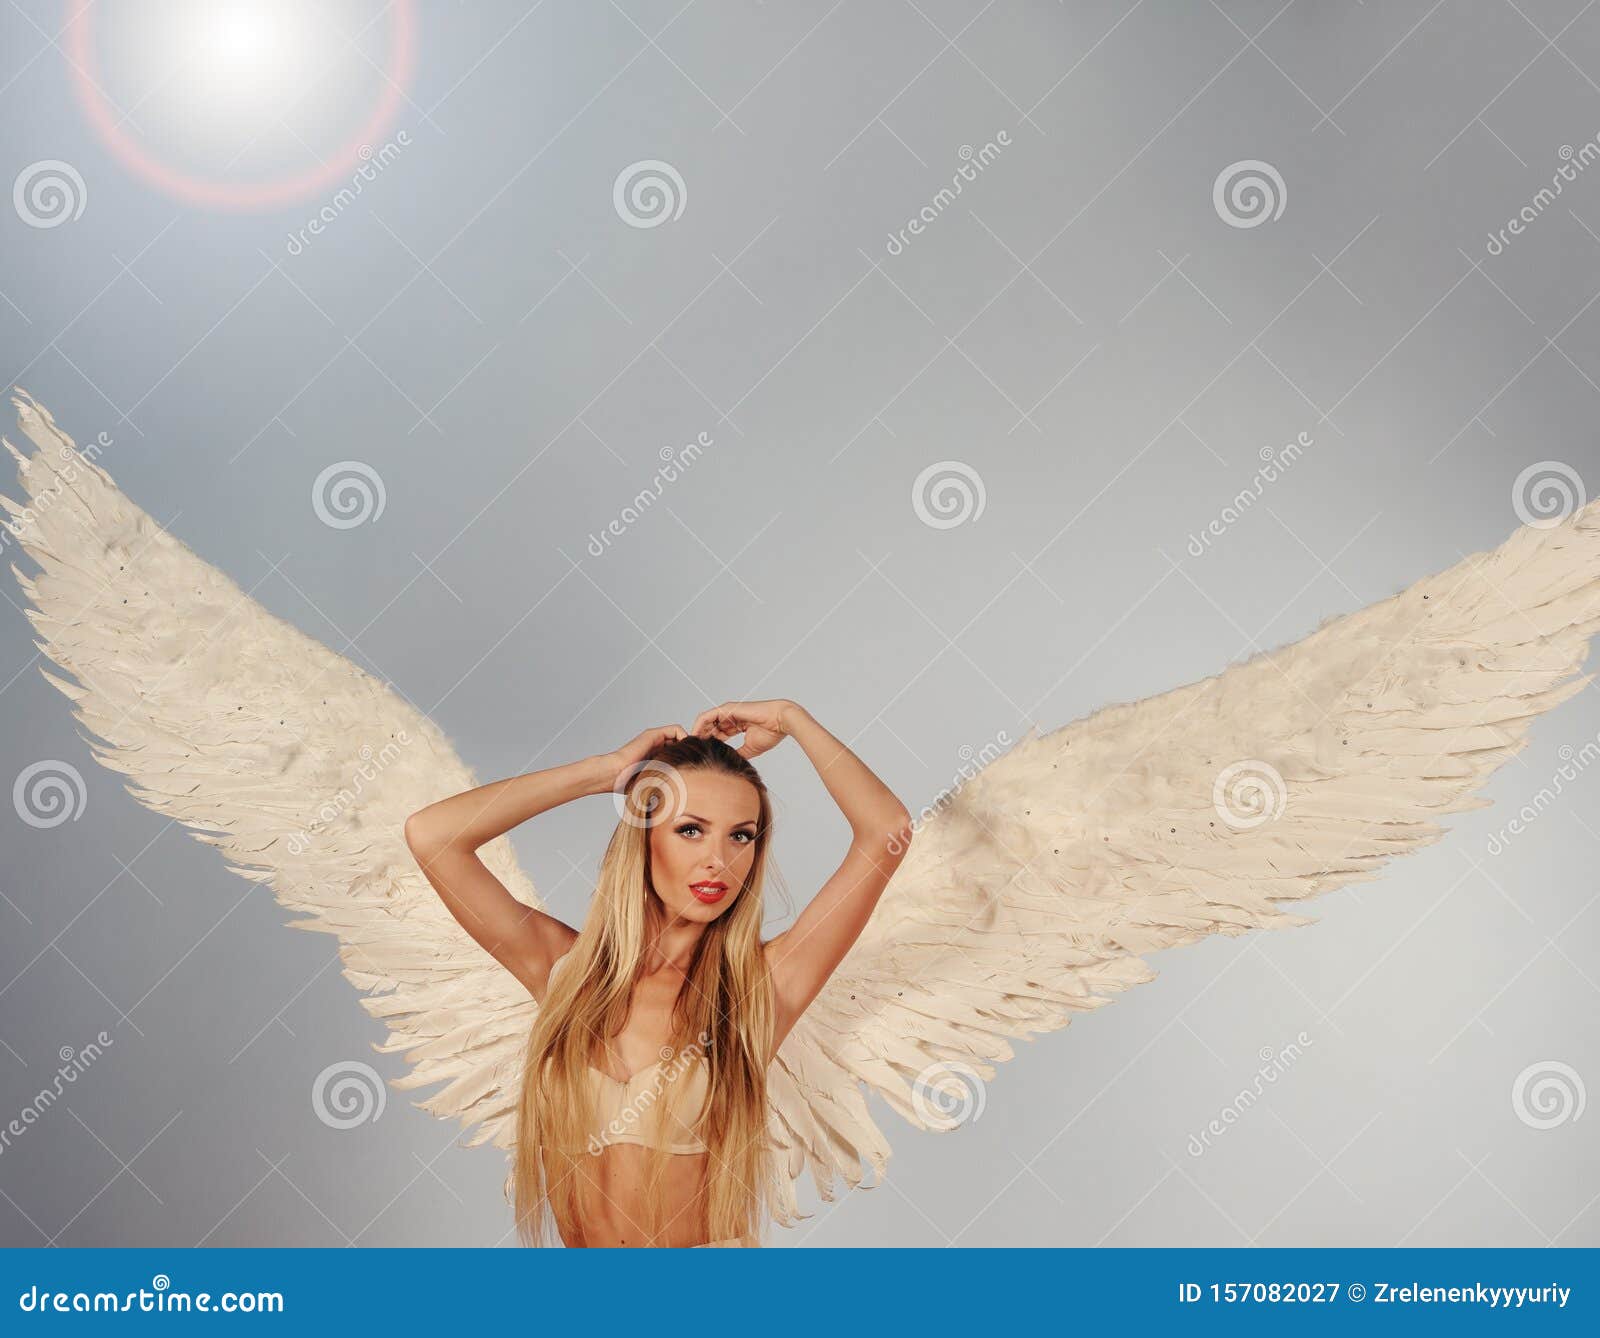 Изображения по запросу Крылья ангела